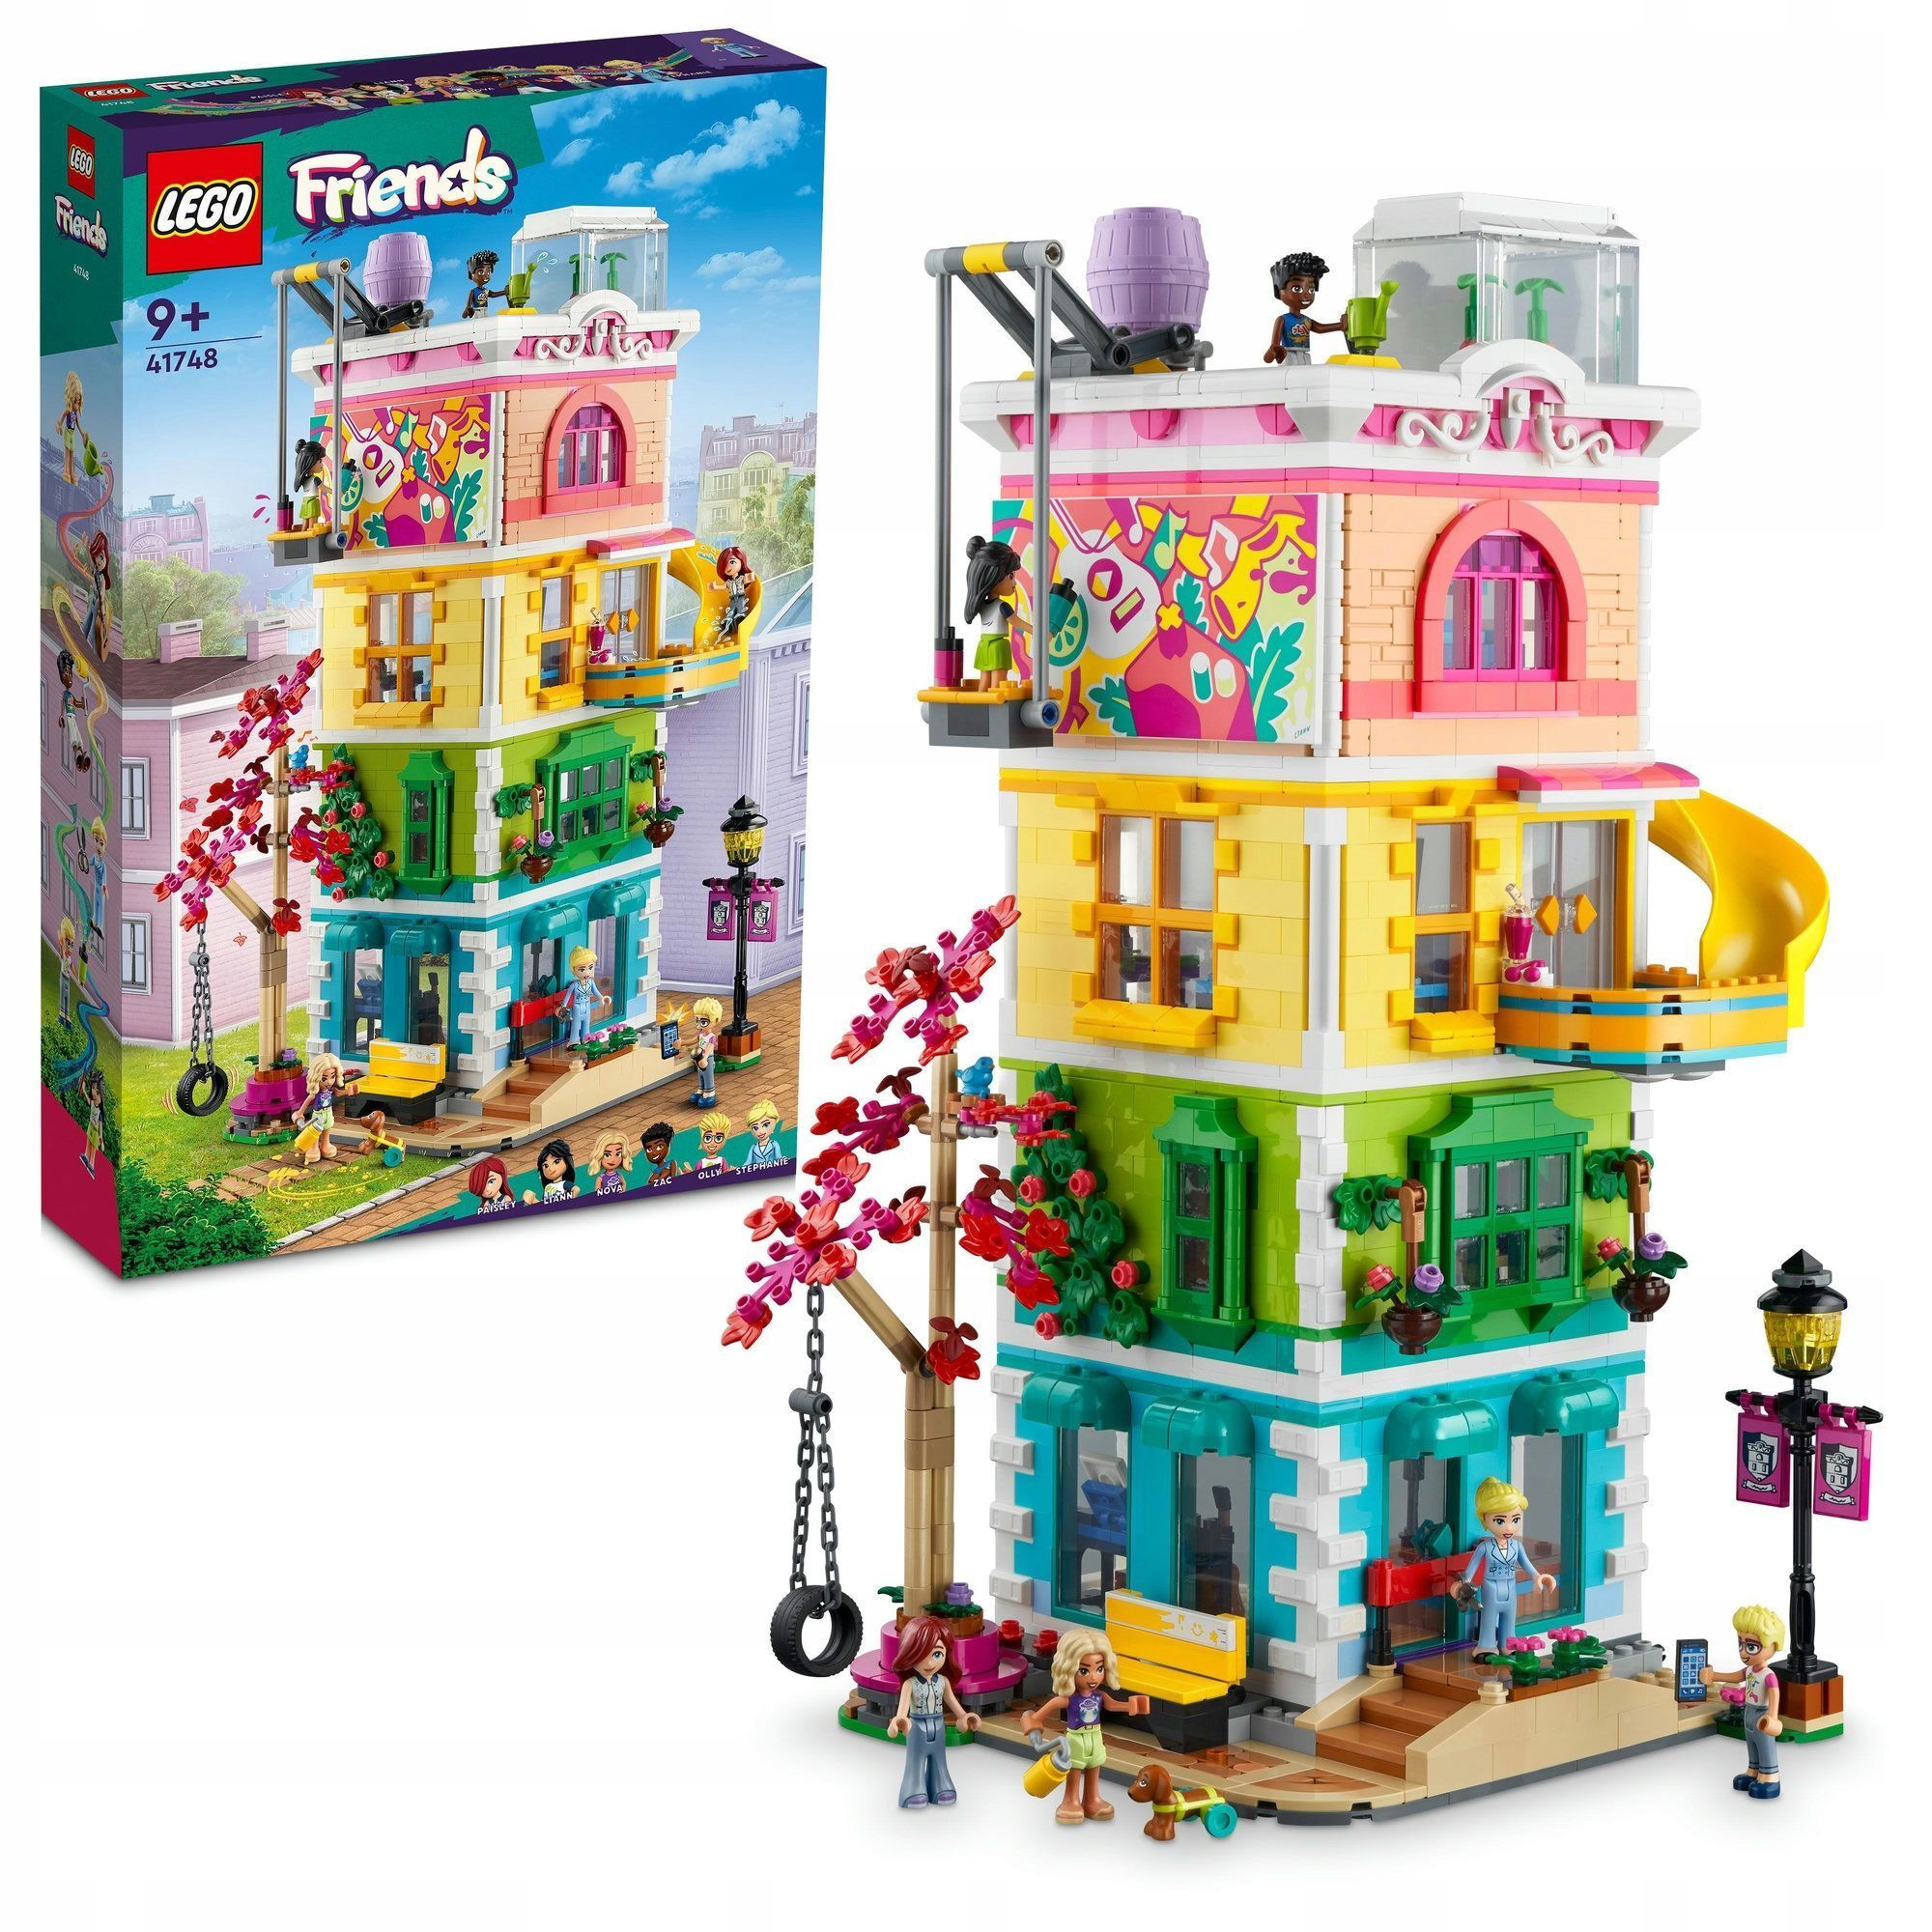 LEGO Friends - Интернет - магазин Территория минимальных цен. Магазин одежды, обуви и игрушек